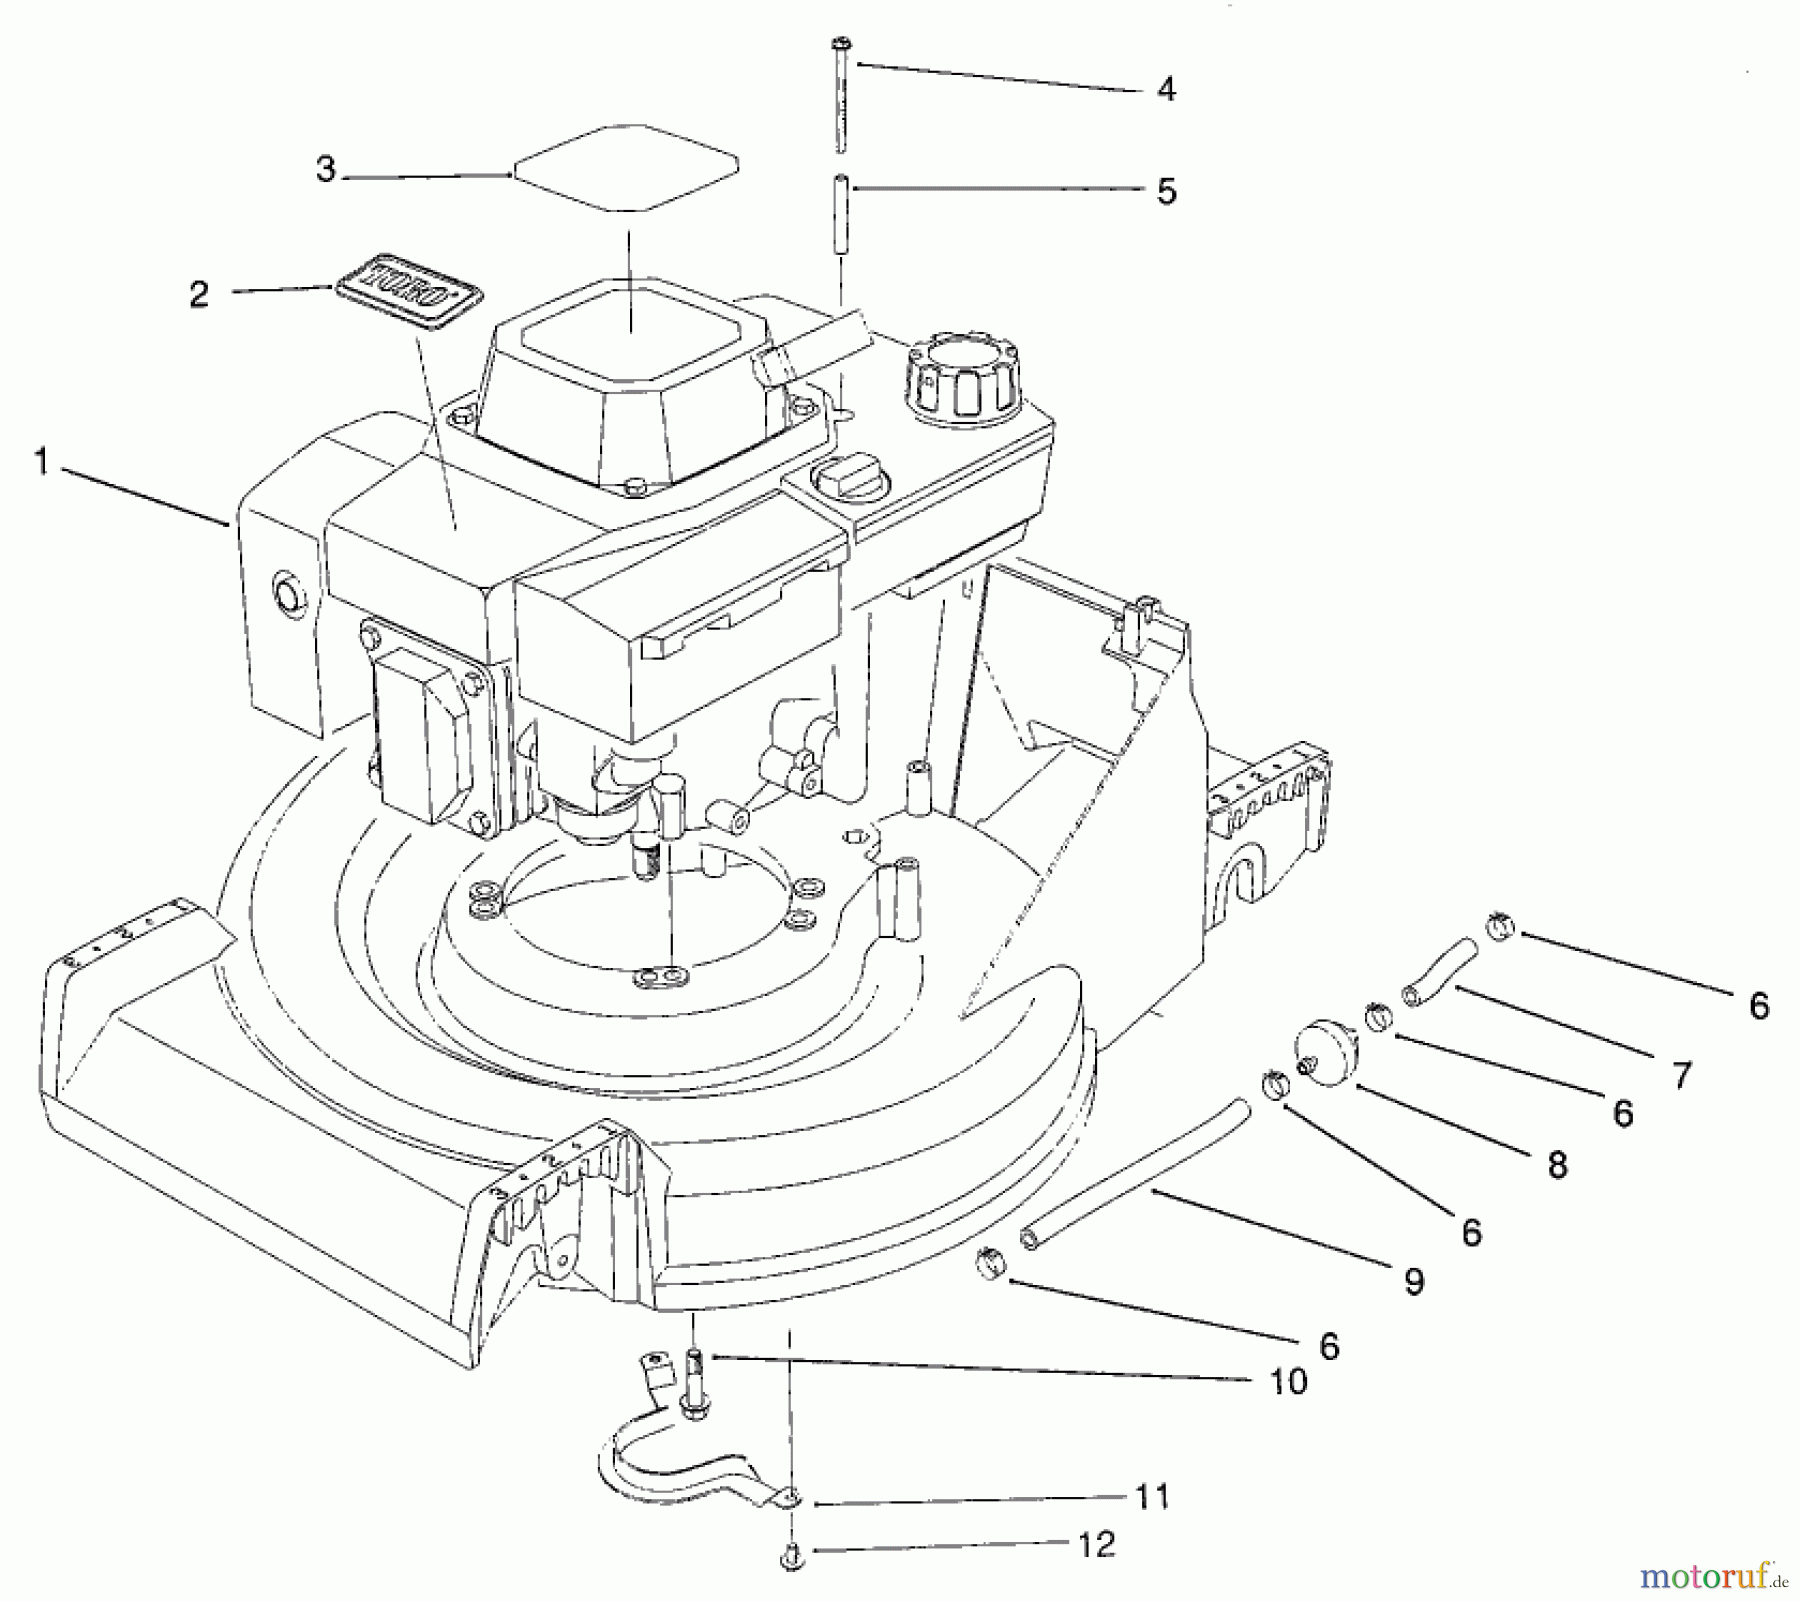  Toro Neu Mowers, Walk-Behind Seite 2 26620B - Toro Lawnmower, 1992 (2000001-2999999) ENGINE ASSEMBLY